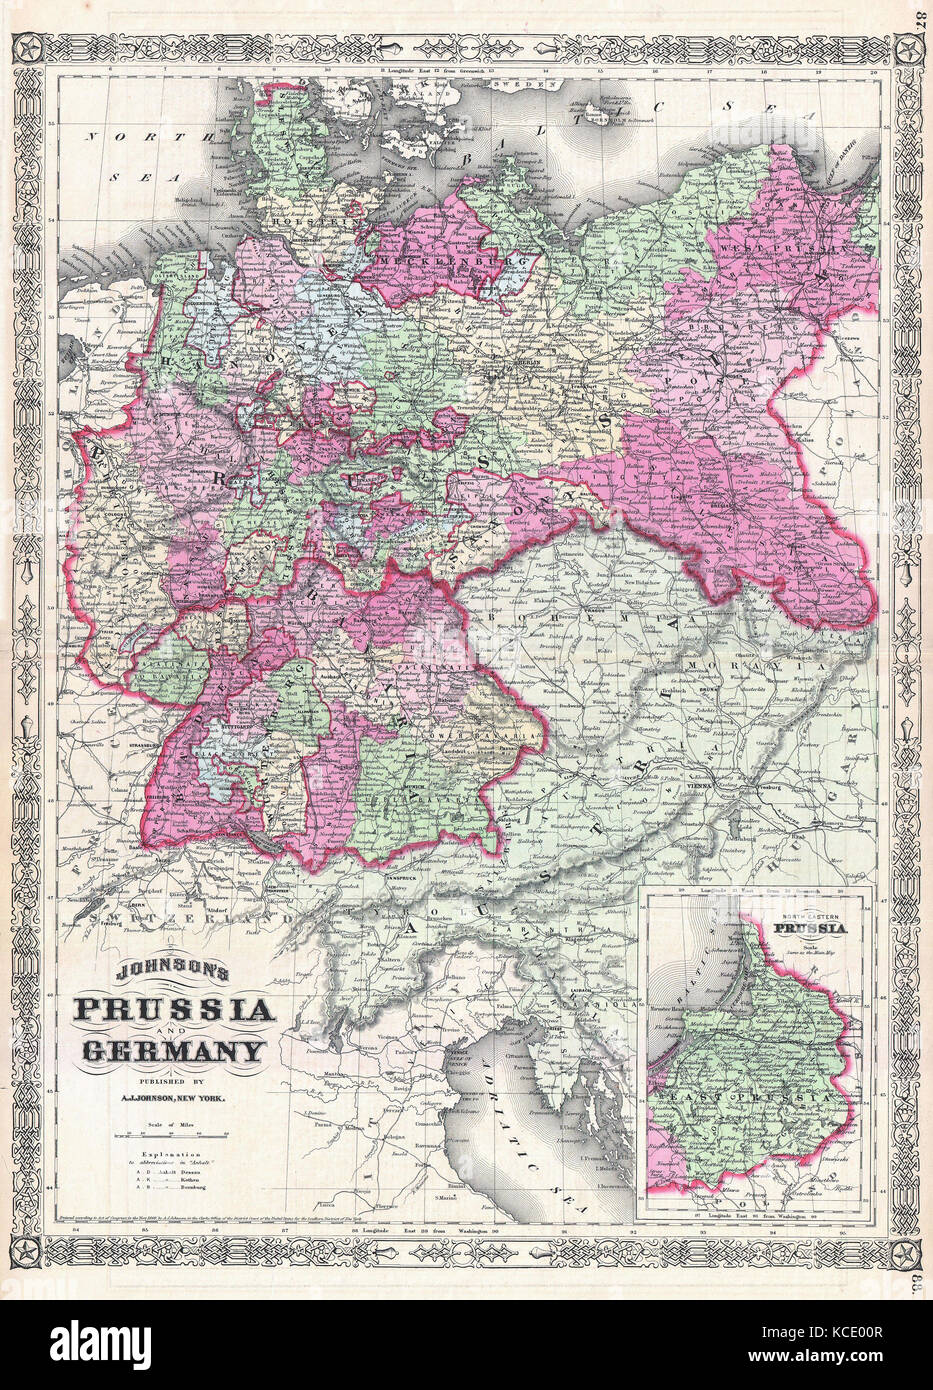 1866, Johnson Mapa de Prusia y Alemania Foto de stock